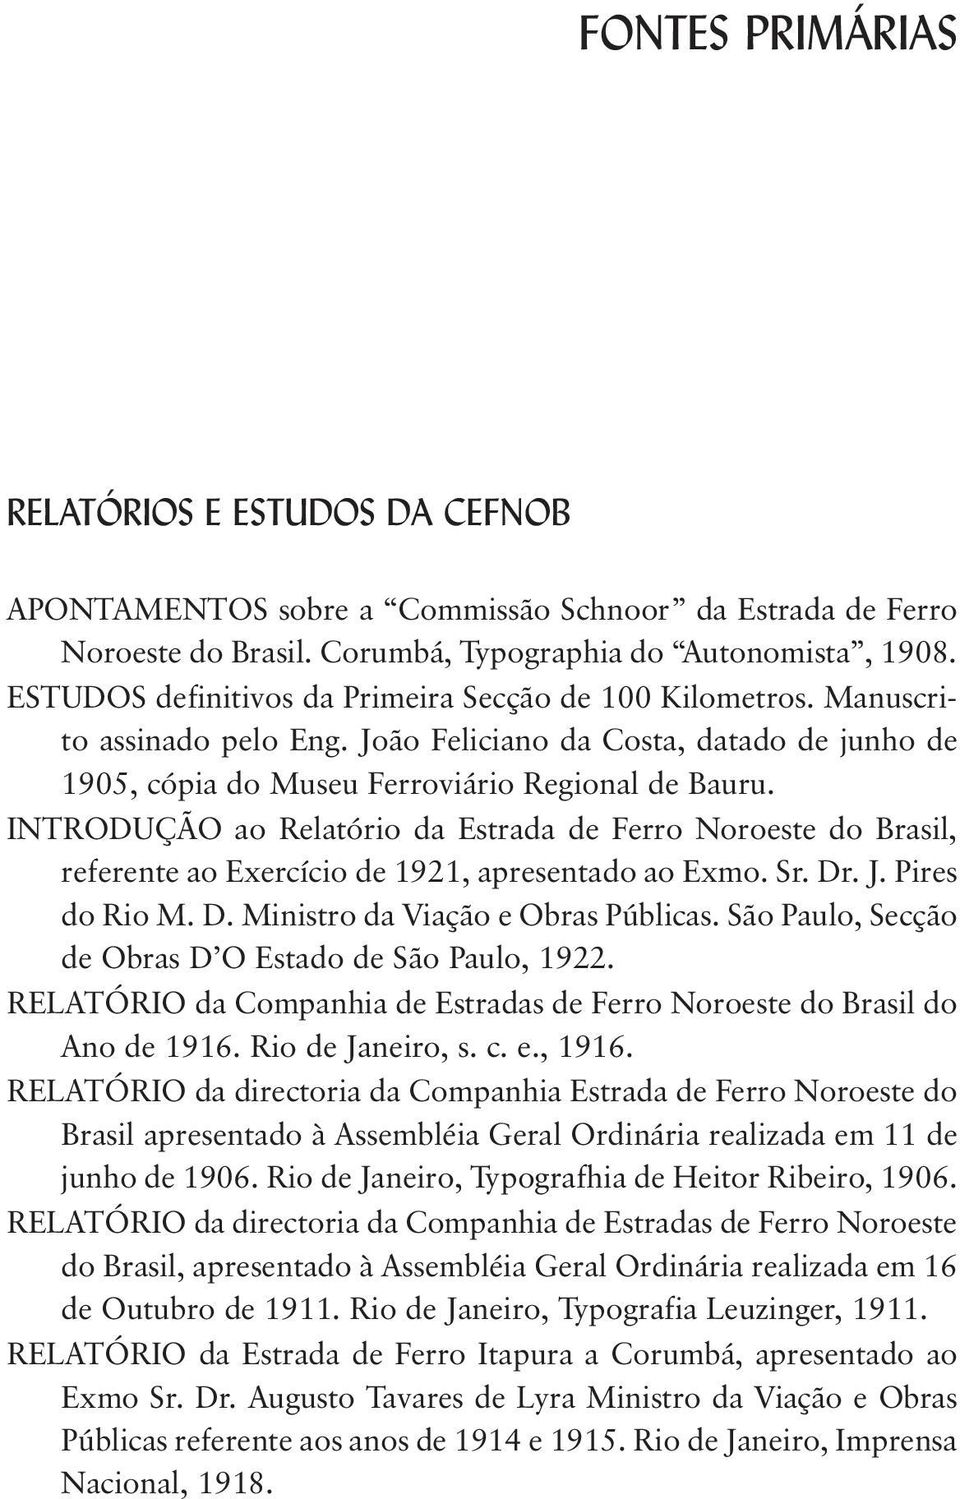 INTRODUÇÃO ao Relatório da Estrada de Ferro Noroeste do Brasil, referente ao Exercício de 1921, apresentado ao Exmo. Sr. Dr. J. Pires do Rio M. D. Ministro da Viação e Obras Públicas.